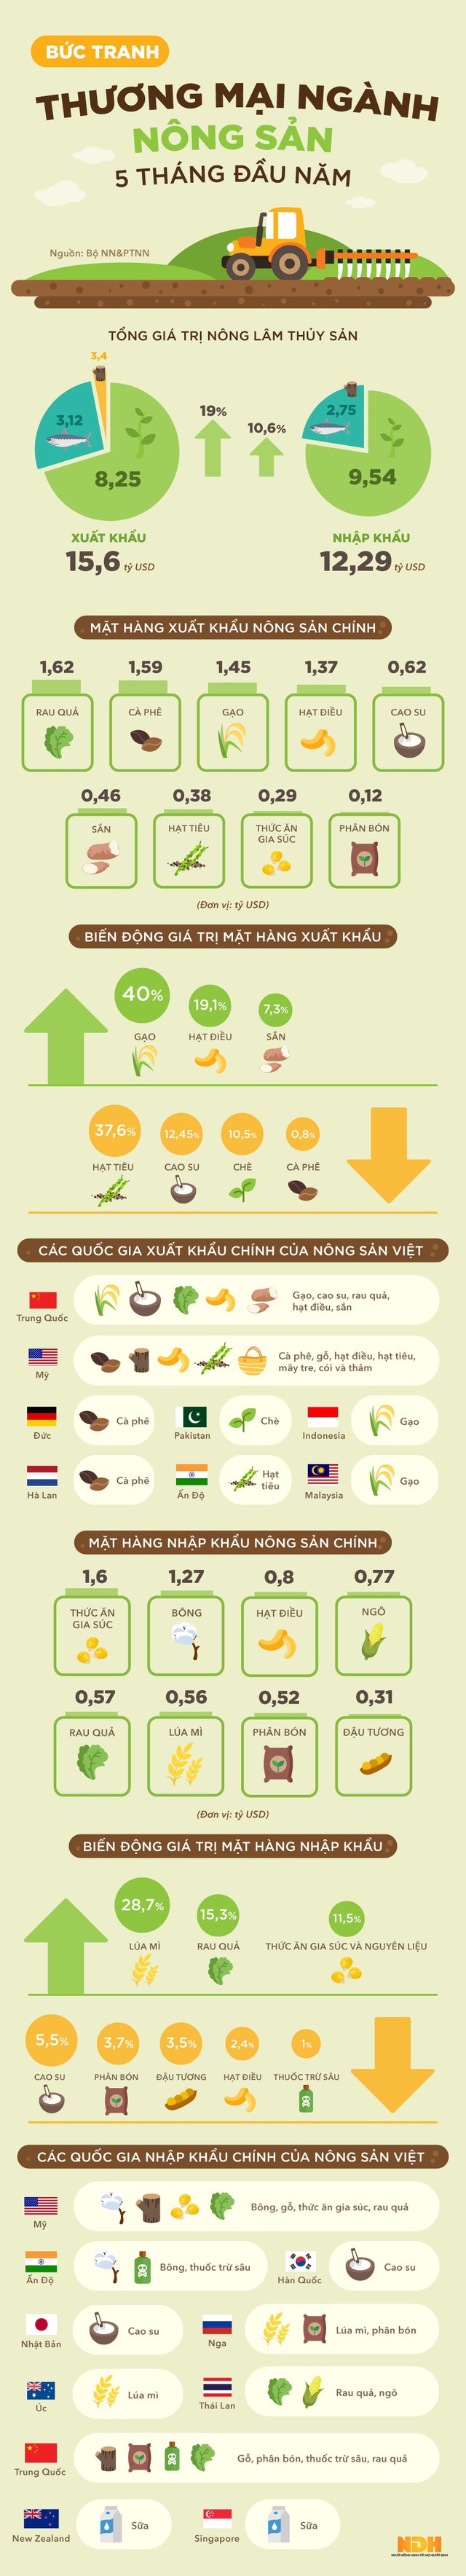 Infographic: Bức tranh thương mại nông sản 5 tháng đầu năm - Ảnh 1.